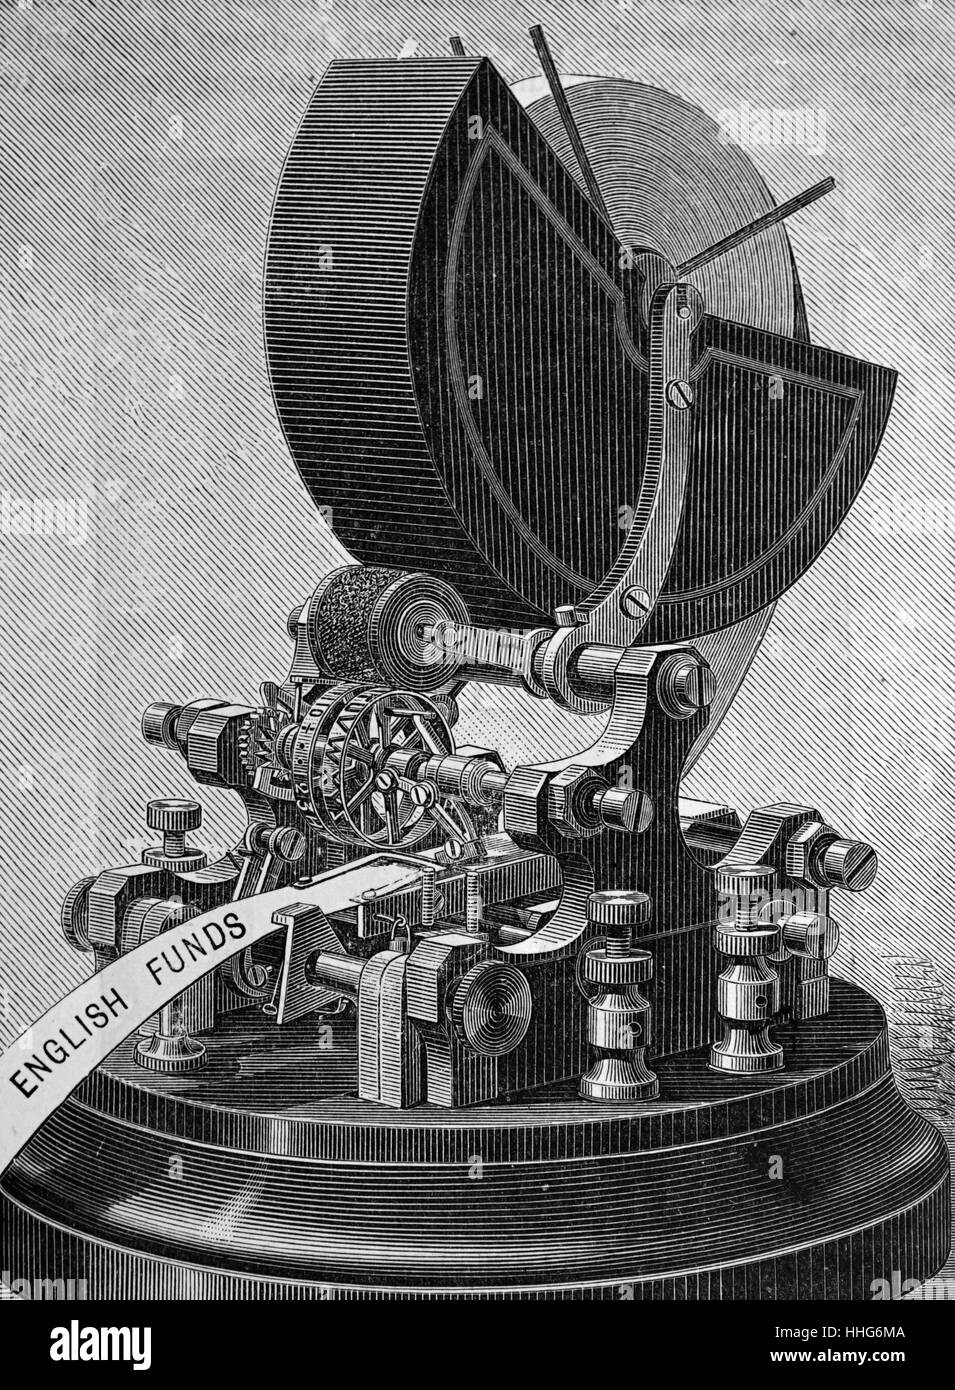 Empfänger der automatische Druck Fernschreiber des Typs verwendet werden, von finanziellen sorgen. 1896. Stockfoto